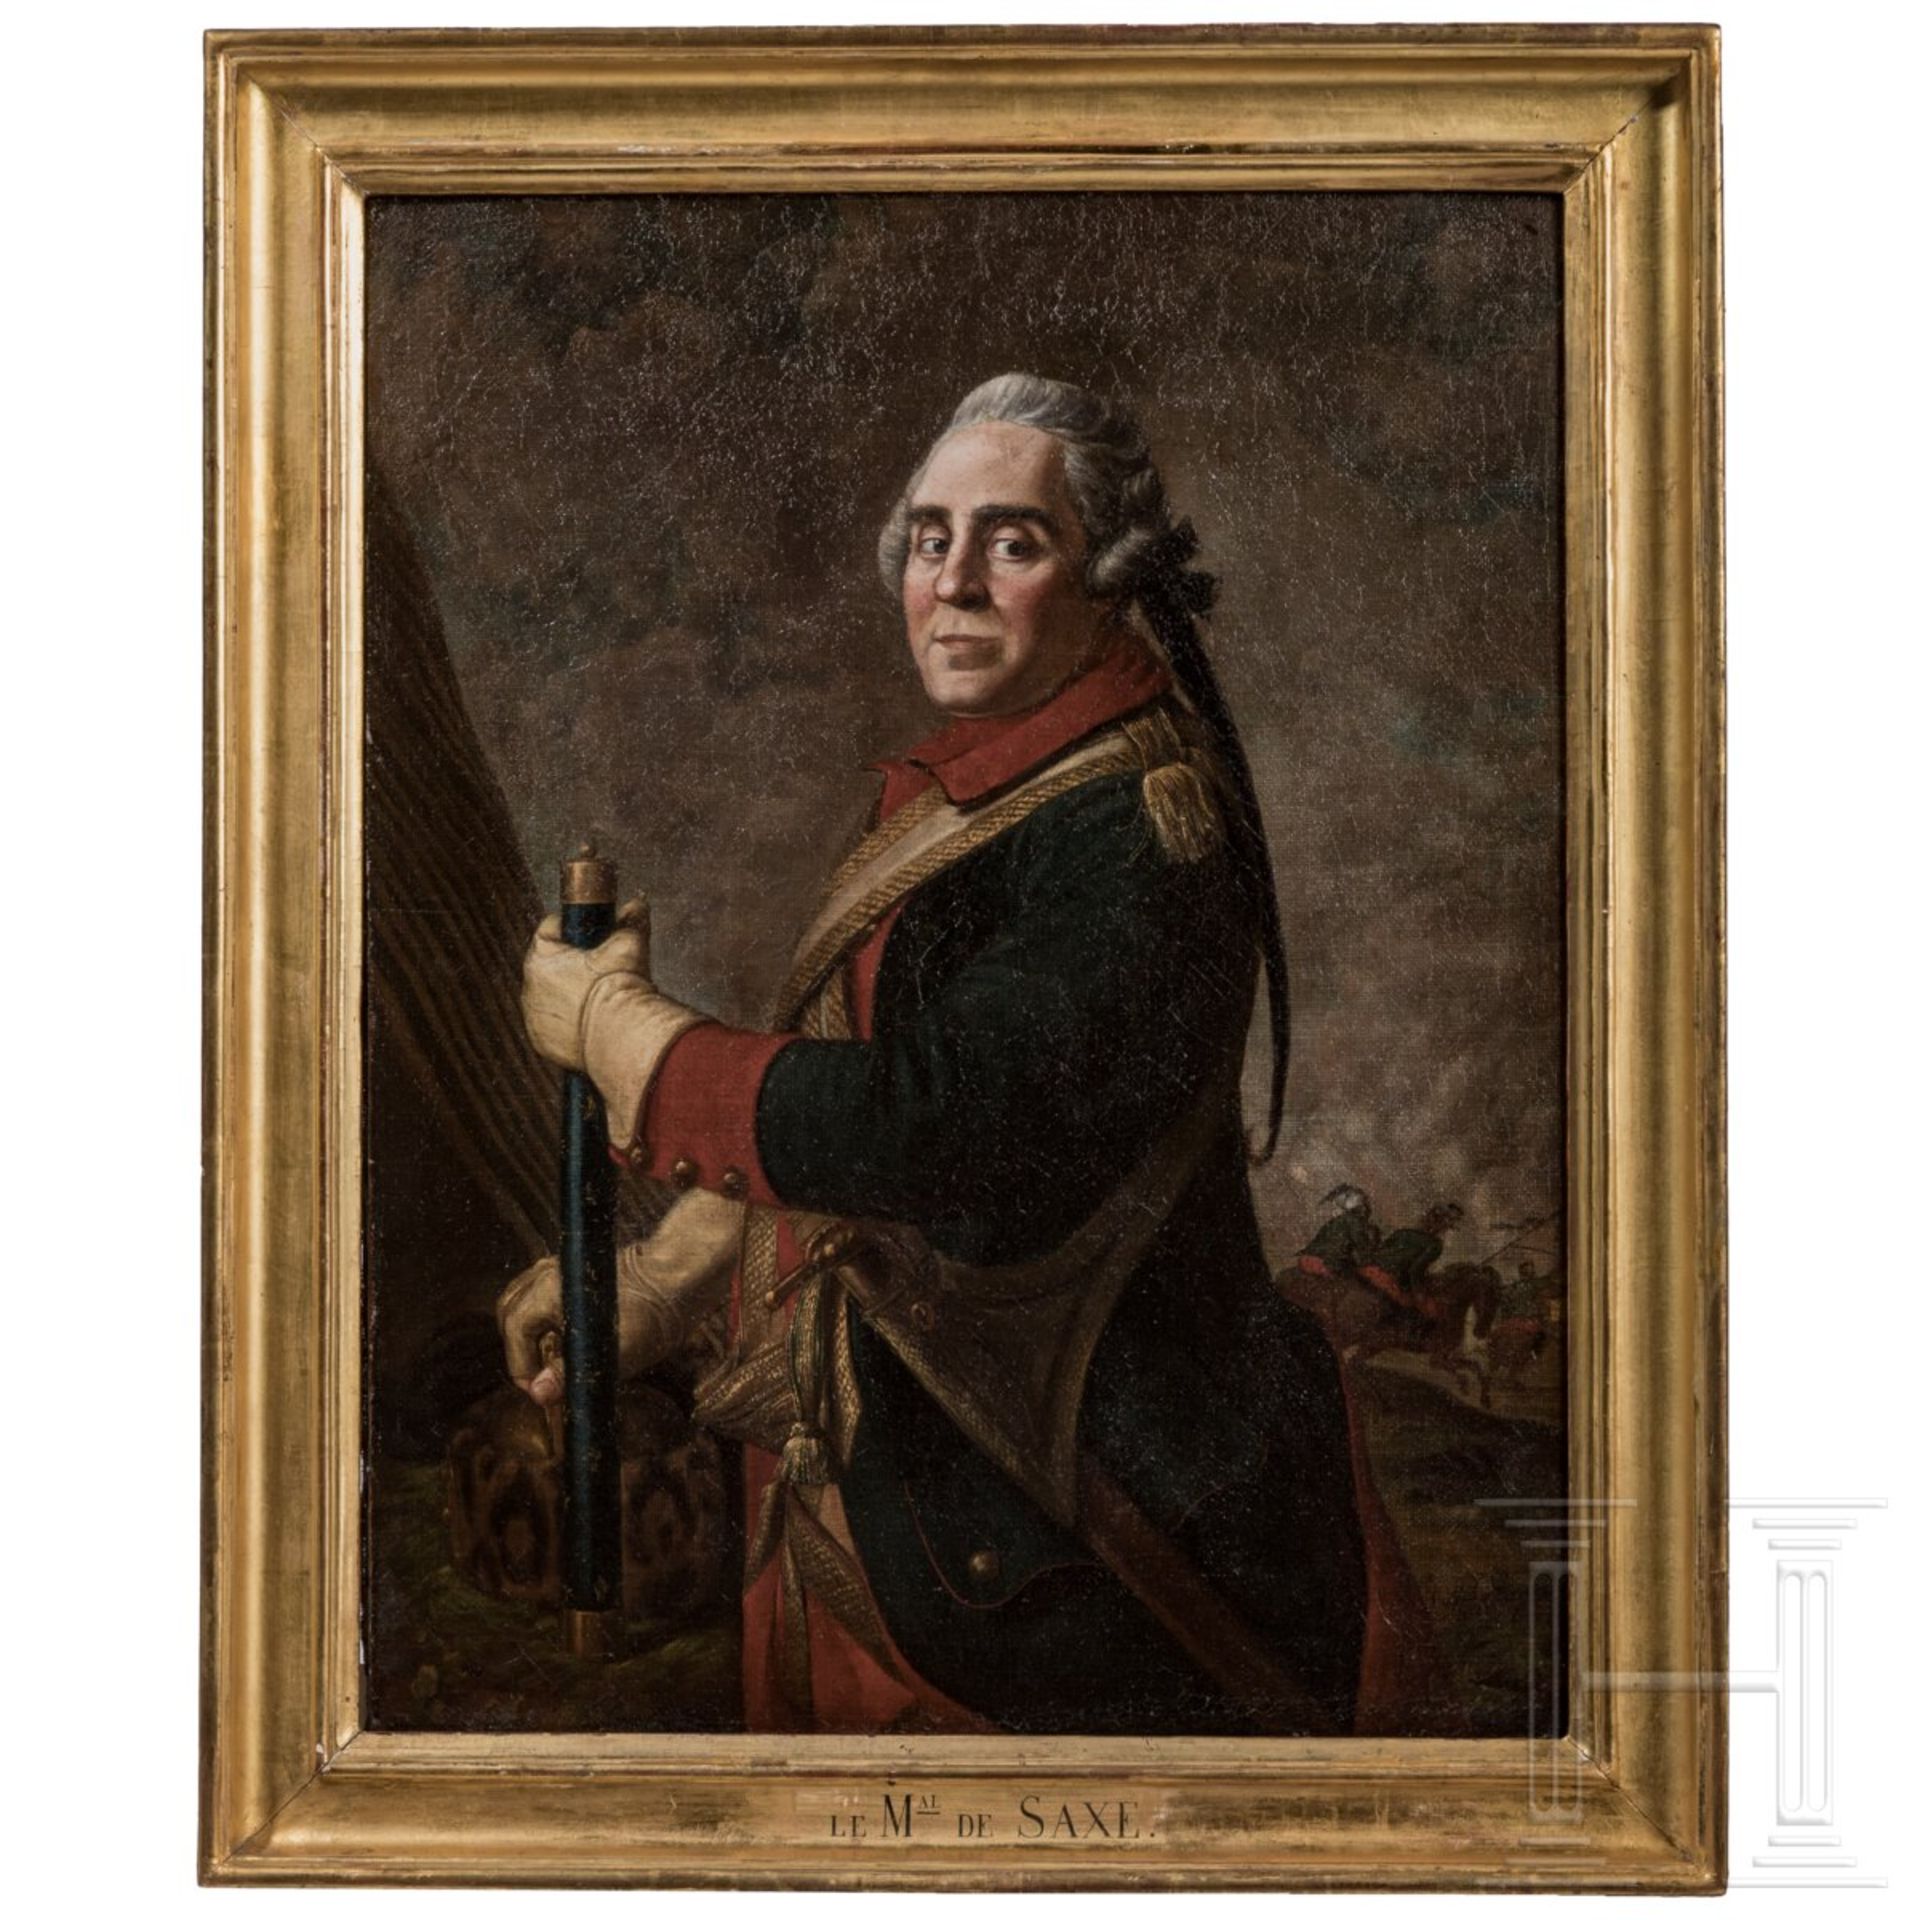 Marschall Moritz von Sachsen (1696 - 1750) - Portraitgemälde, 2. Hälfte 18. Jhdt.